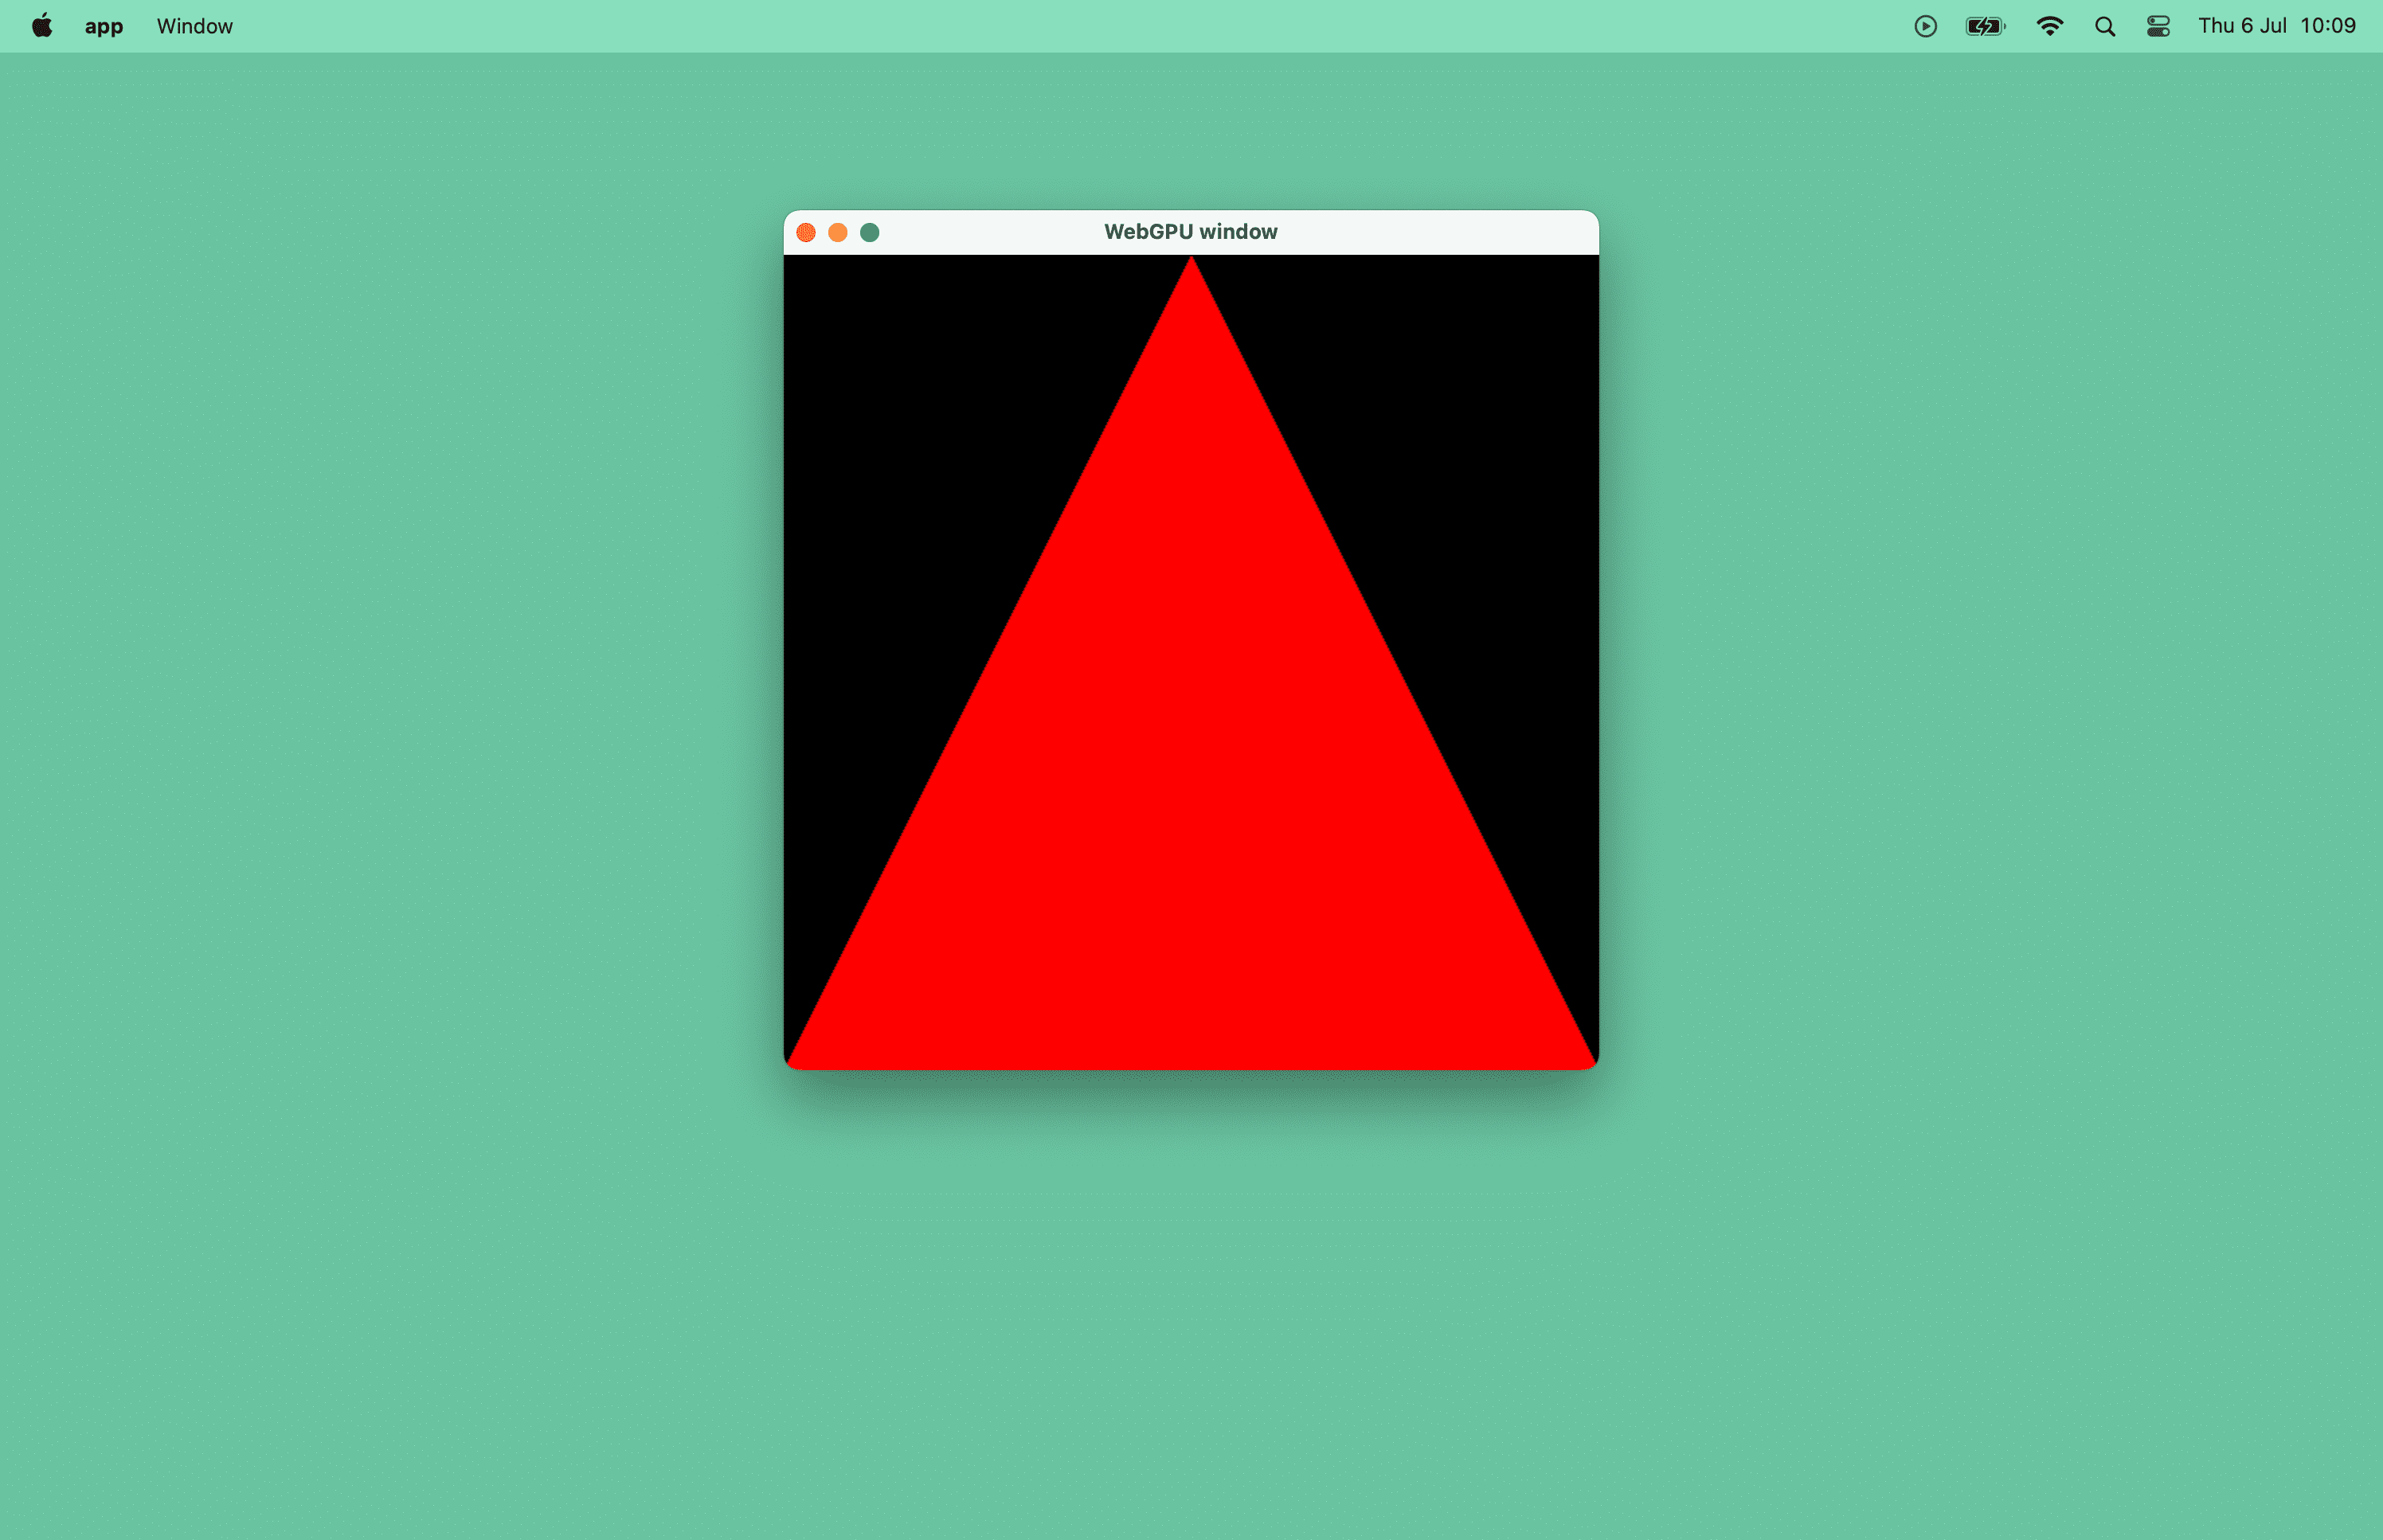 צילום מסך של משולש אדום בחלון macOS.